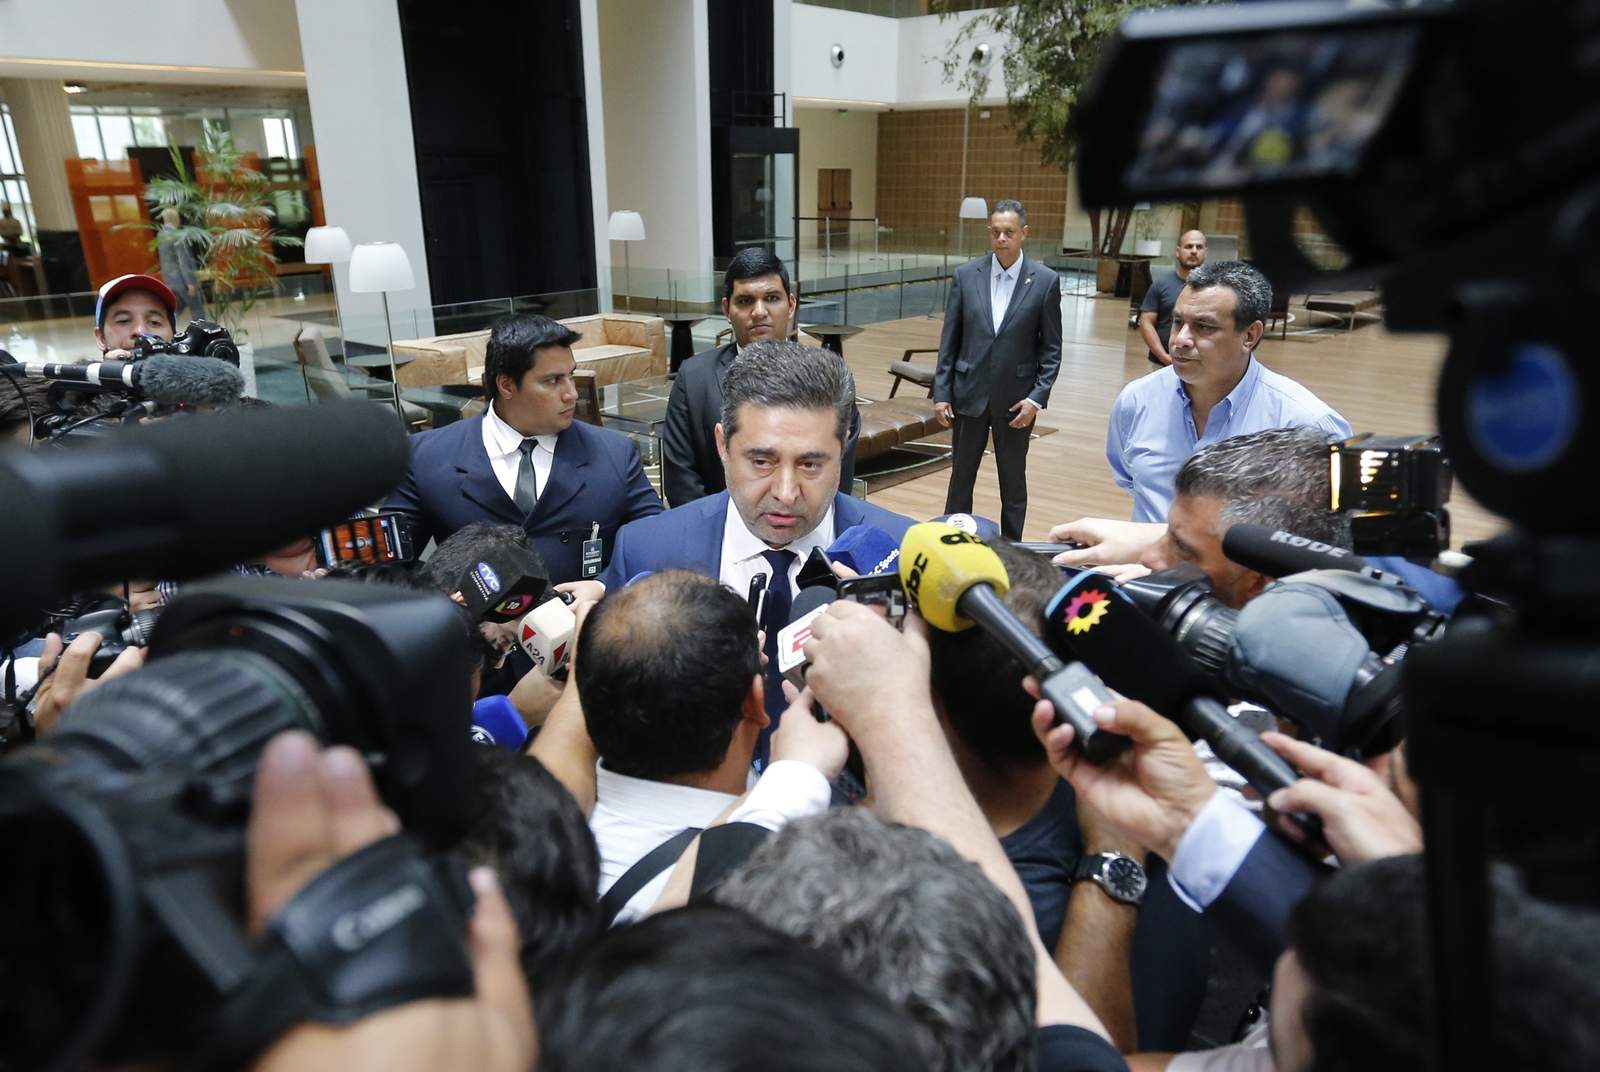 El presidente de Boca Juniors, Daniel Angelici, responde preguntas de la prensa luego de una reunión privada en la sede de la Conmebol.